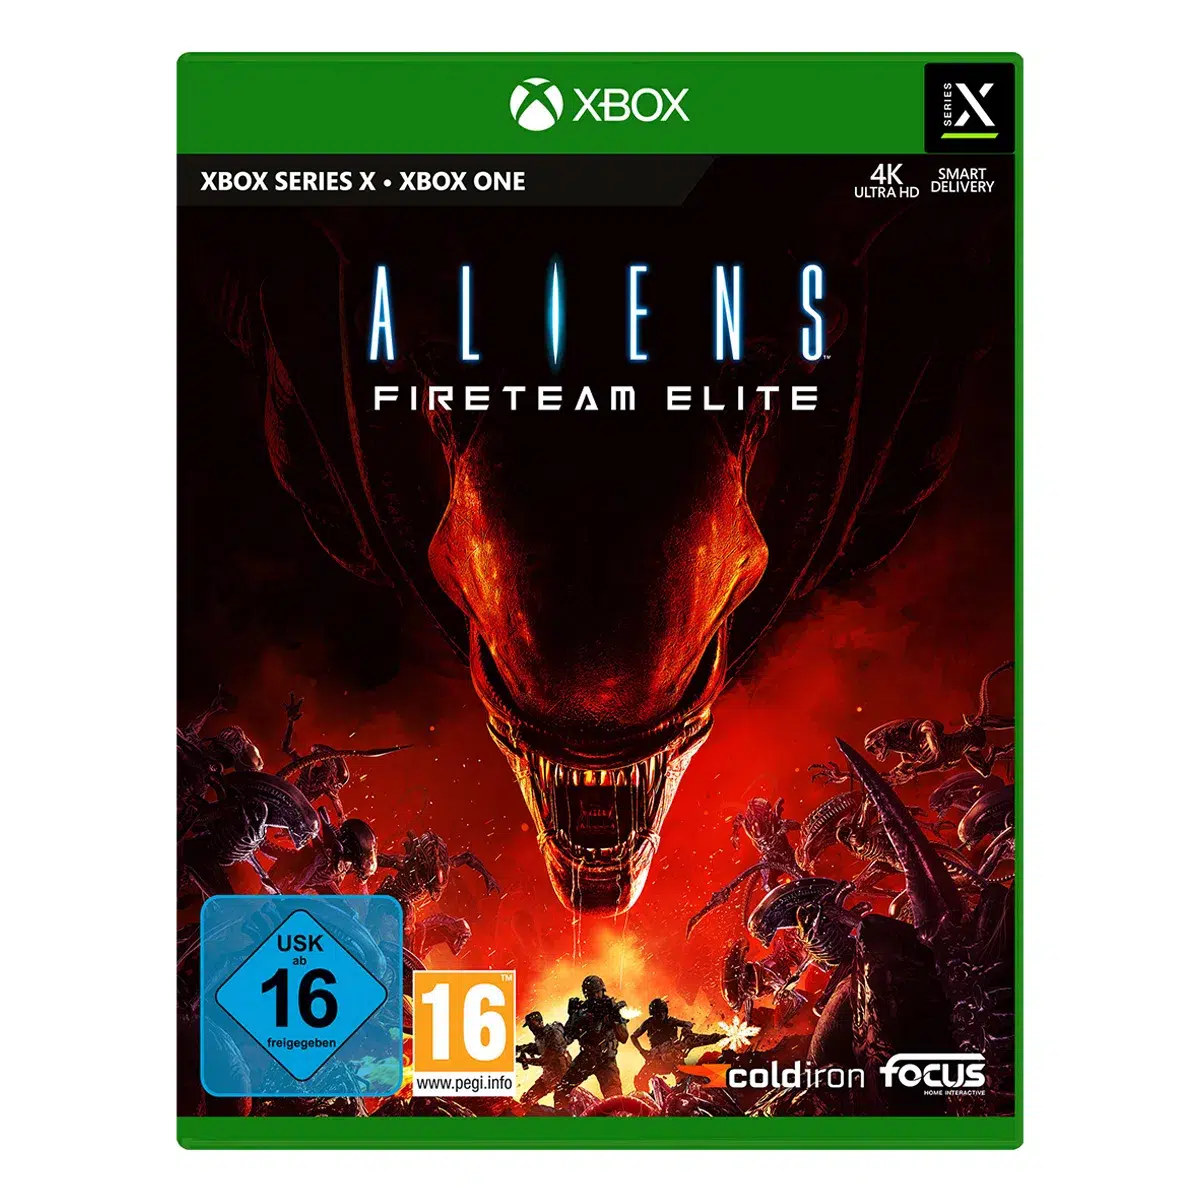 Aliens: Fireteam Elite - XSRX